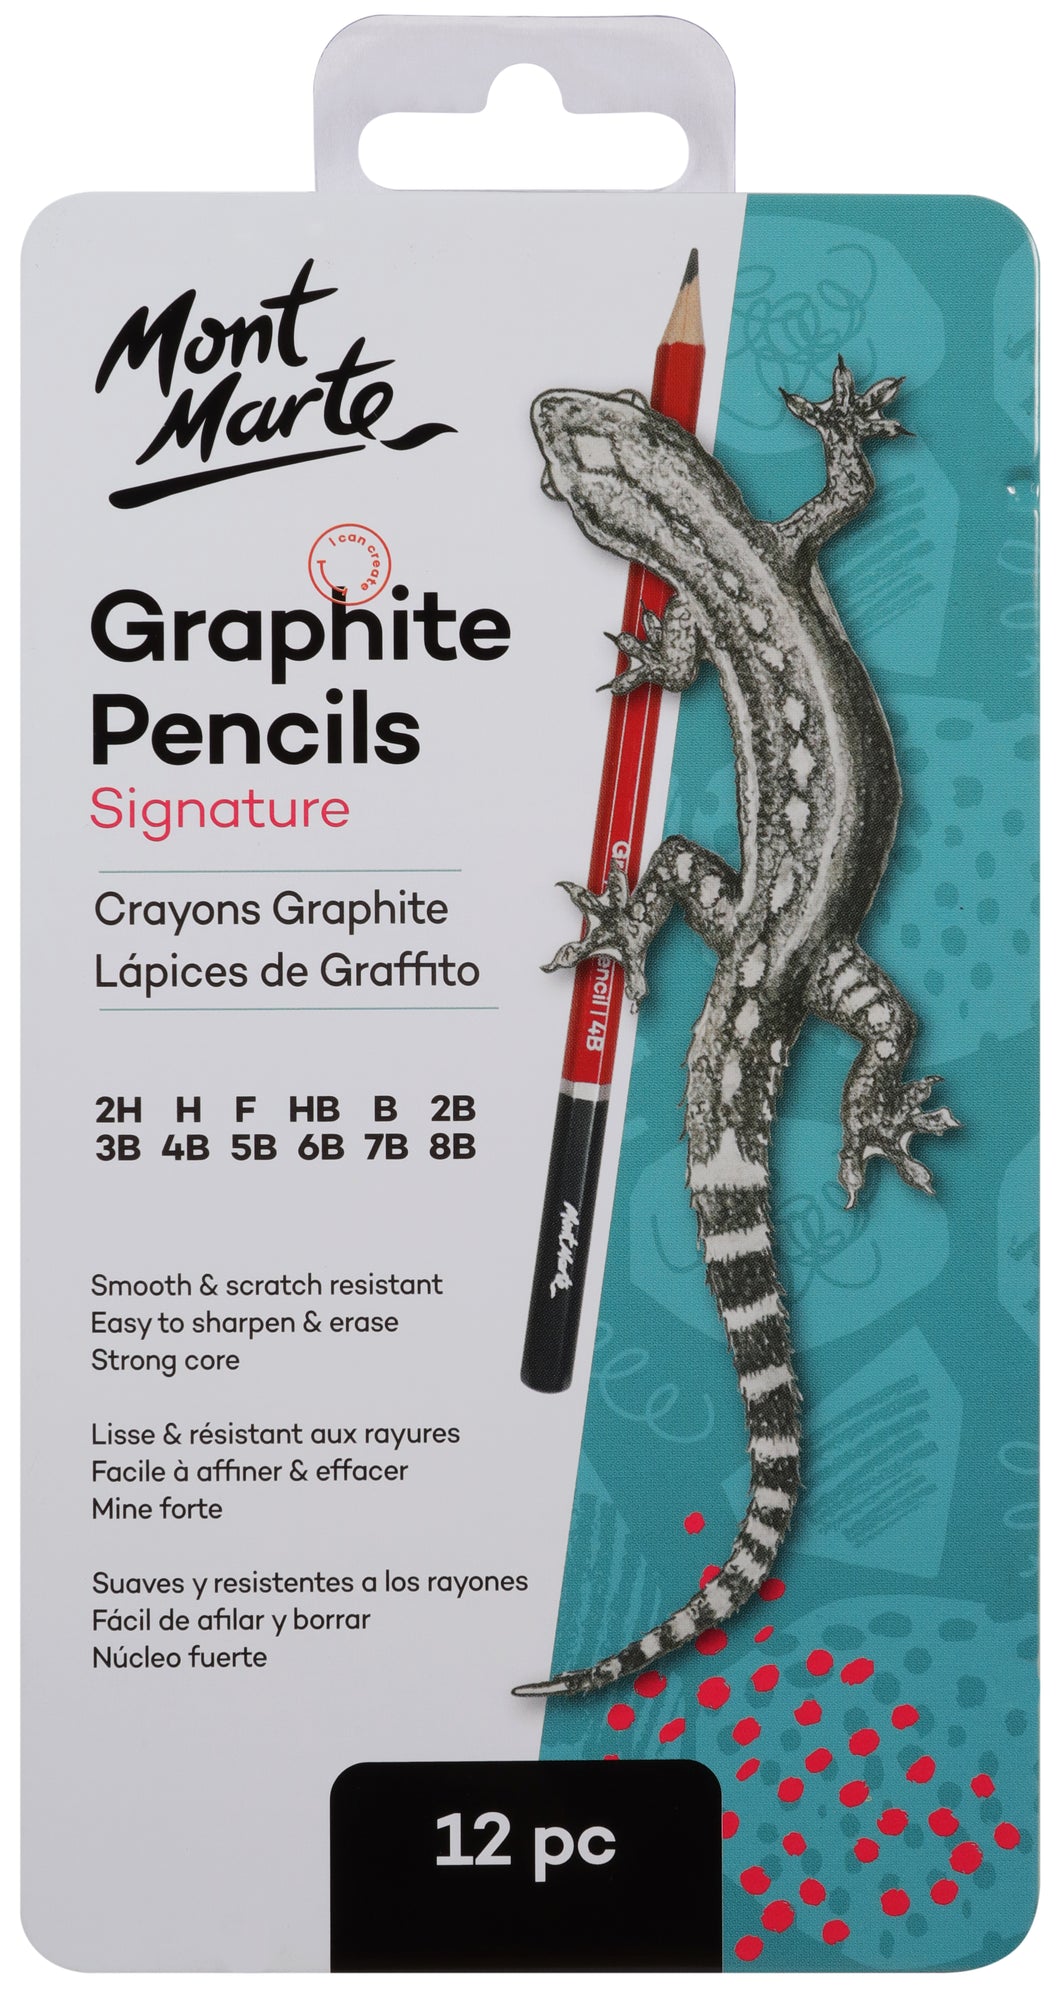 Monte Marte Graphite Pencils 12pc